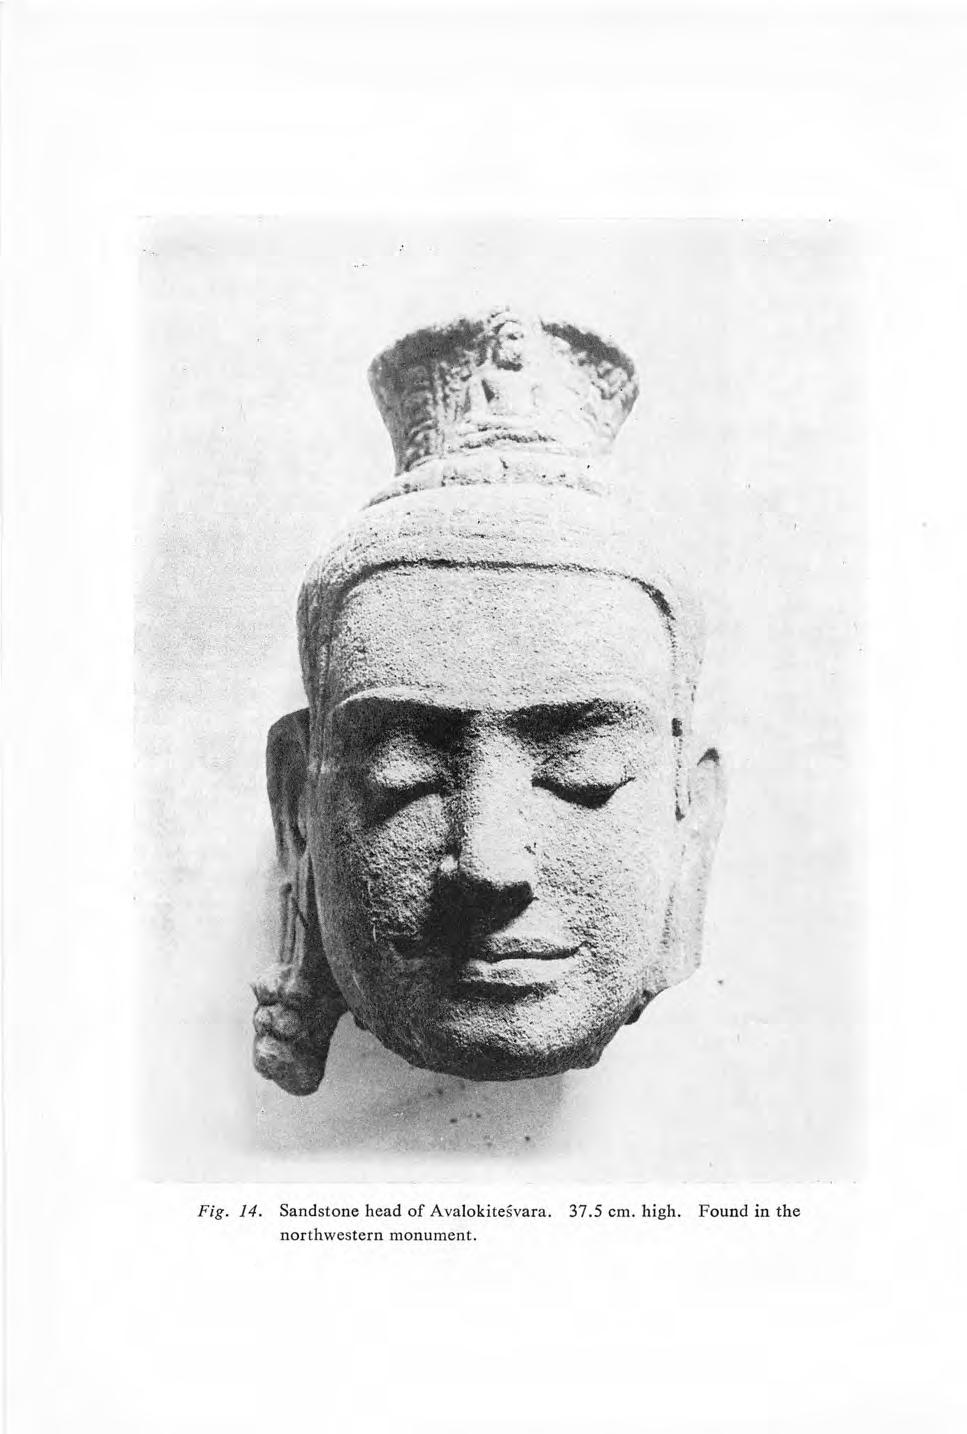 Fig. 14. Sandstone head of Avalokitesvara. 37.